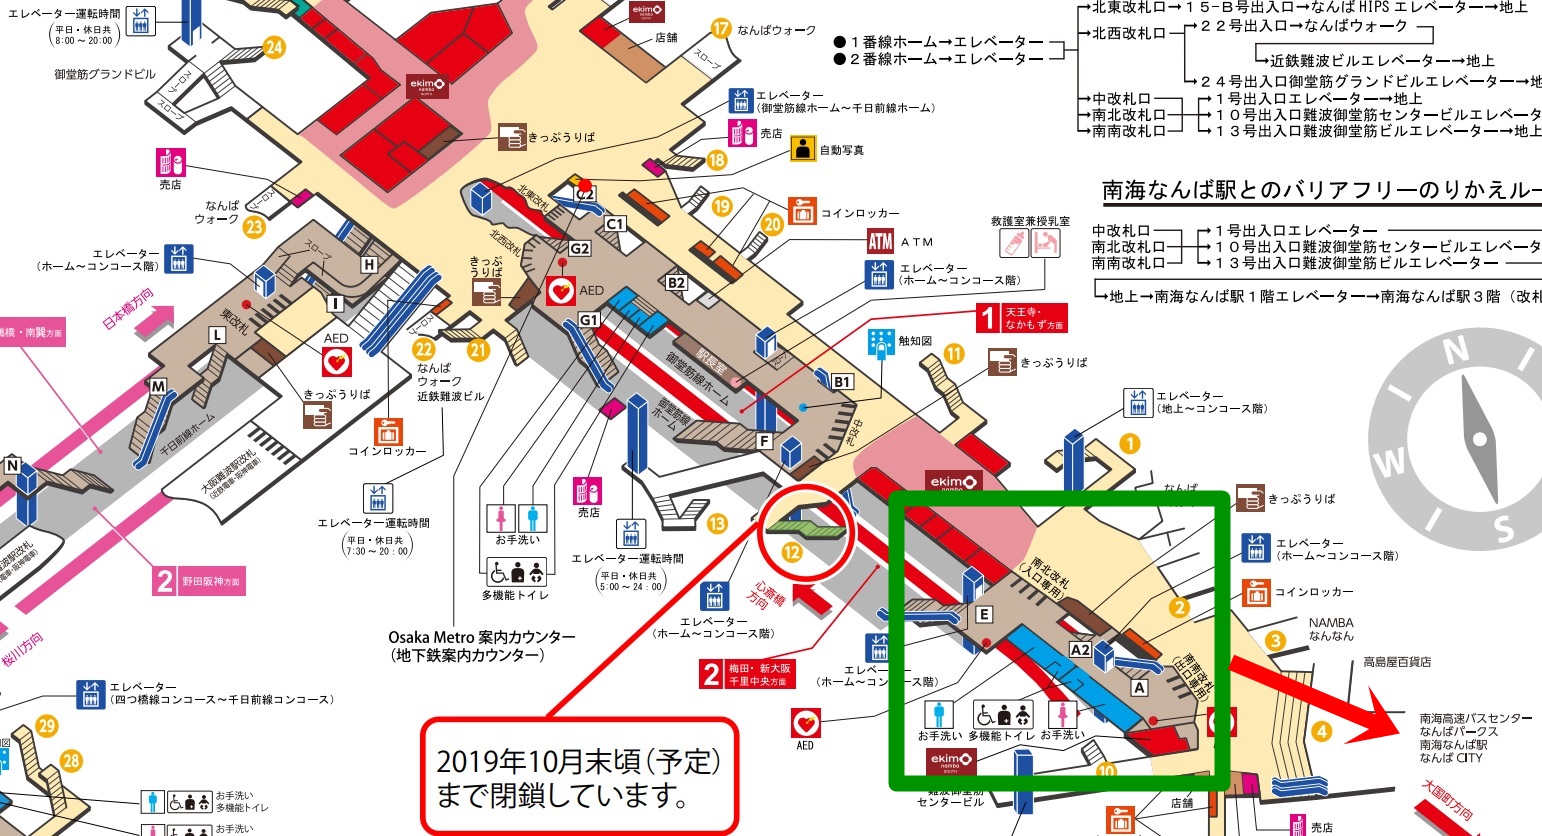 なんば駅 御堂筋線 南海線の乗り換え方 日本国内の歩き方を色々紹介するブログ